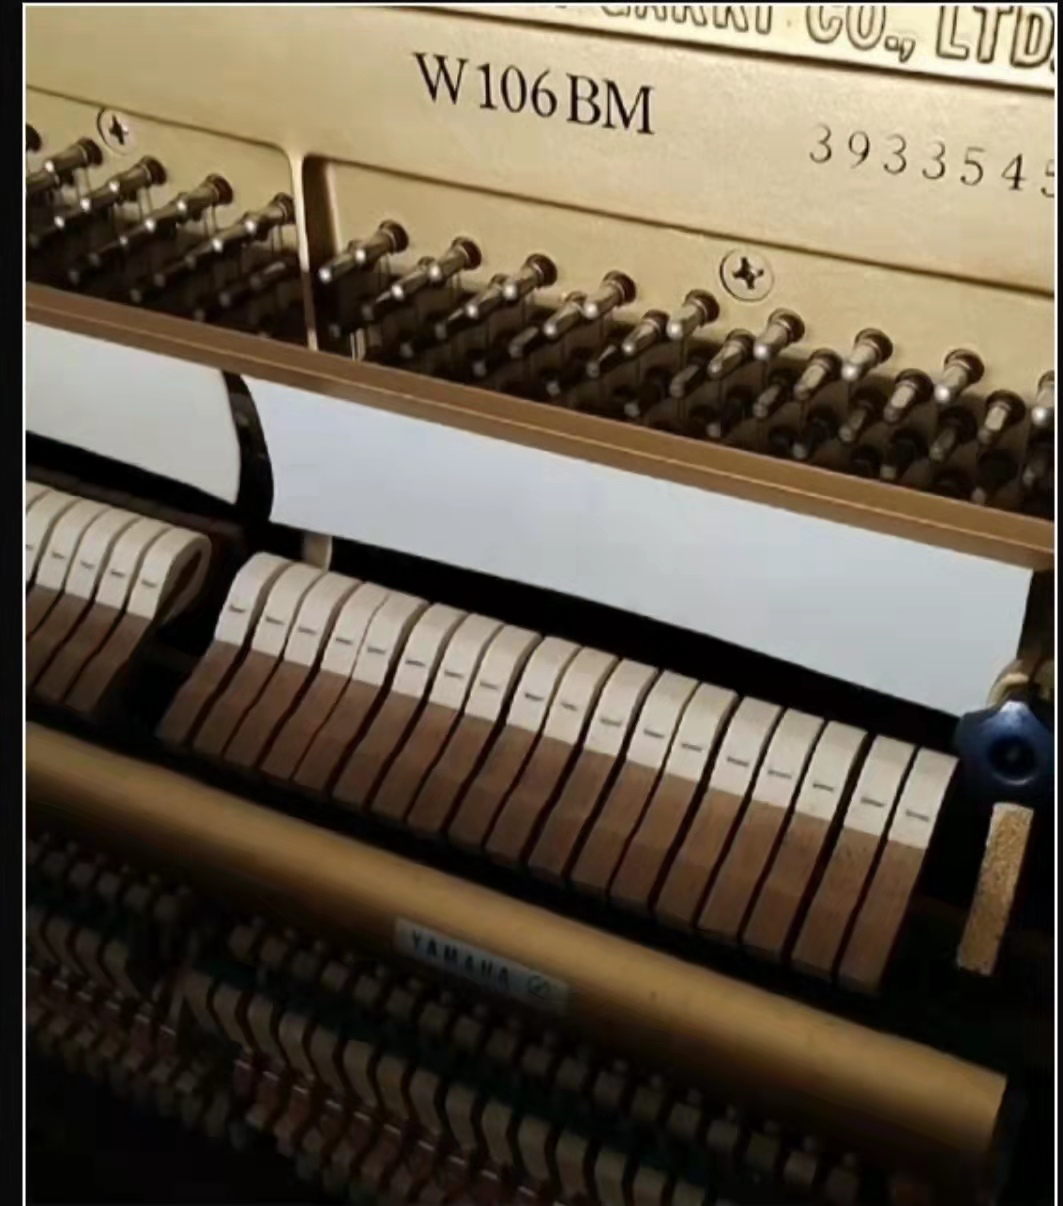 yamaha雅马哈二手钢琴最受欢迎的高端原木色W106BM高颜值裸琴分享